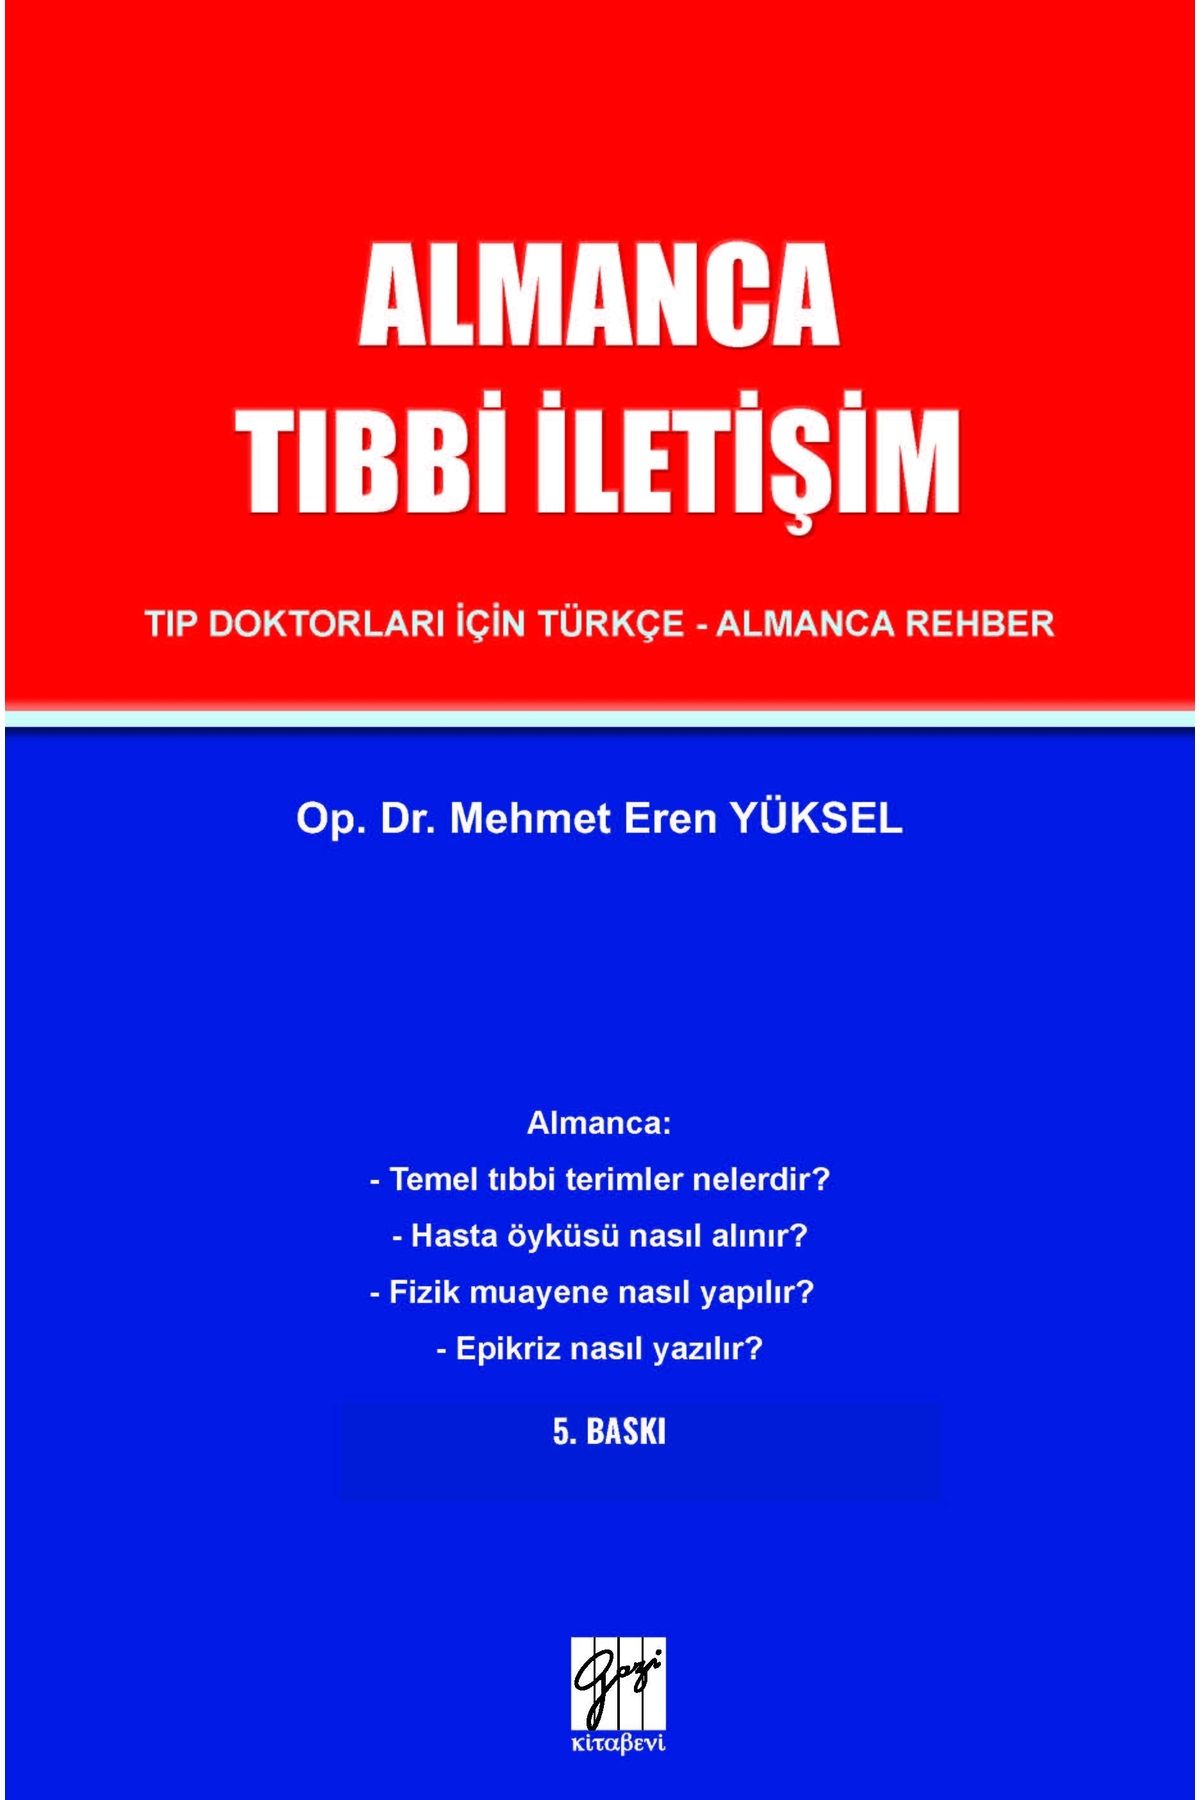 Gazi Kitabevi Almanca Tıbbi Iletişim - Tıp Doktorları Için Türkçe-almanca Rehber - Op. Dr. Mehmet Eren Yüksel